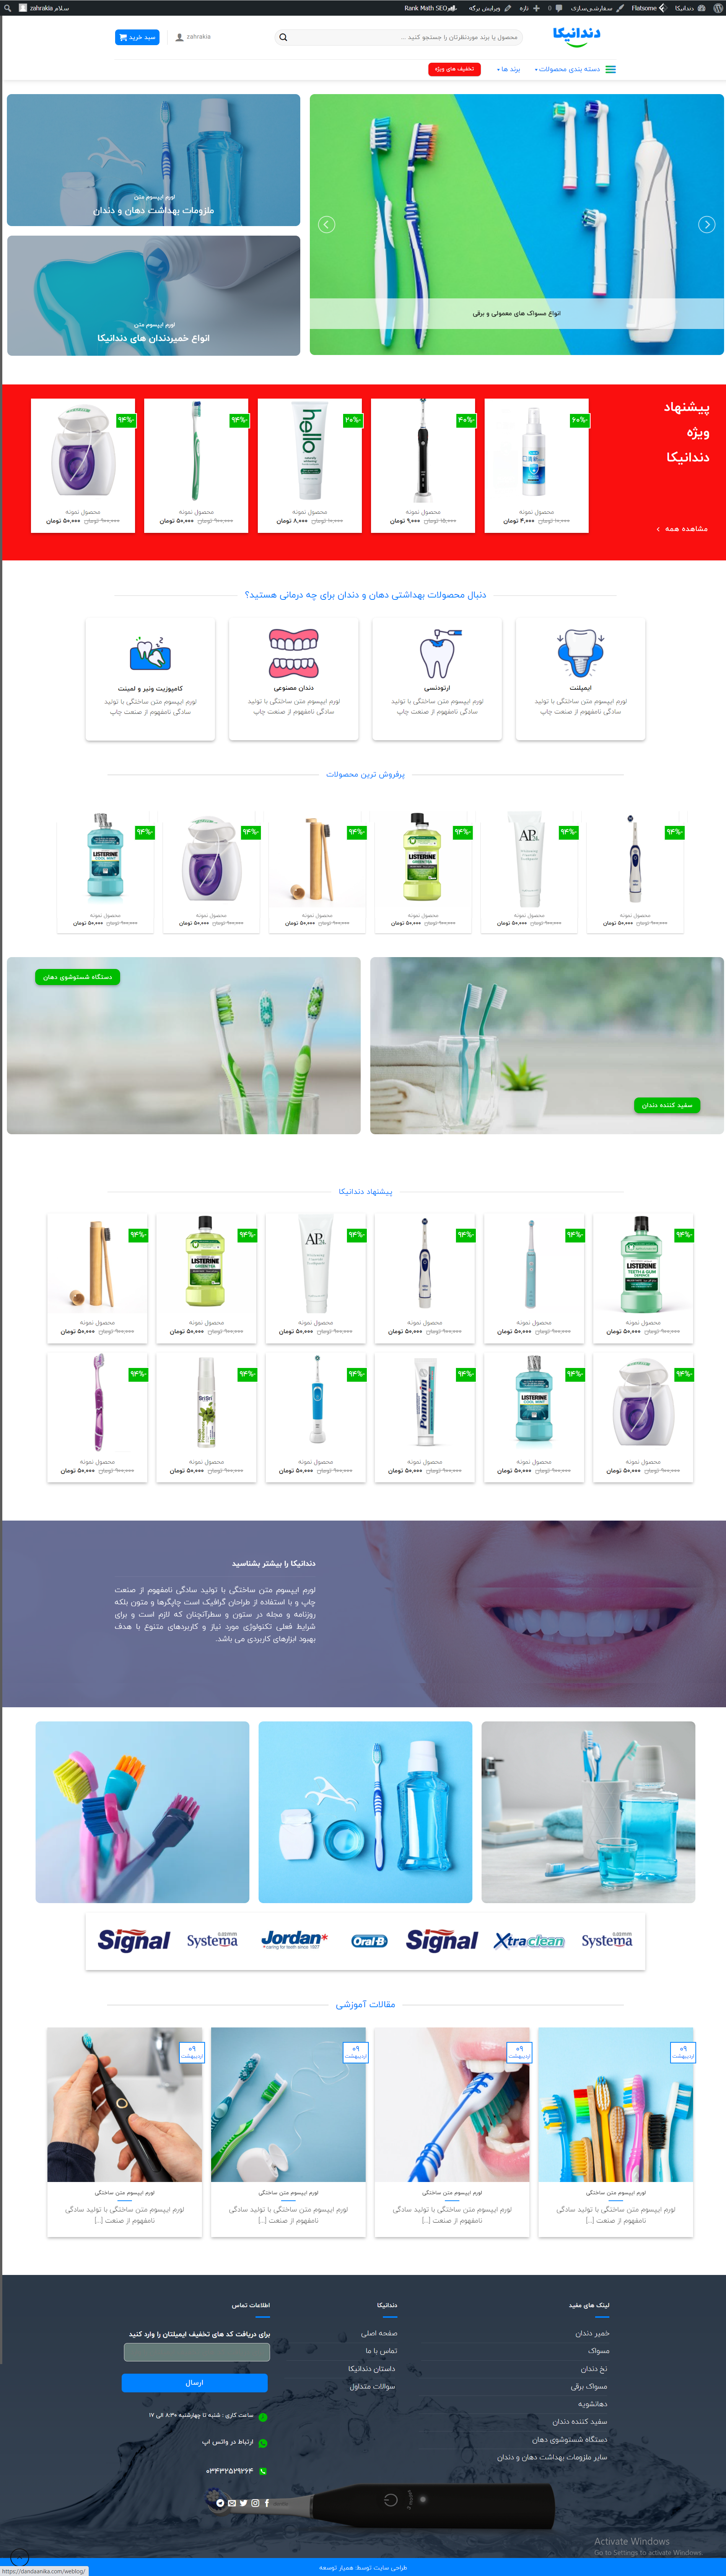 طراحی فروشگاه اینترنتی دندانیکا